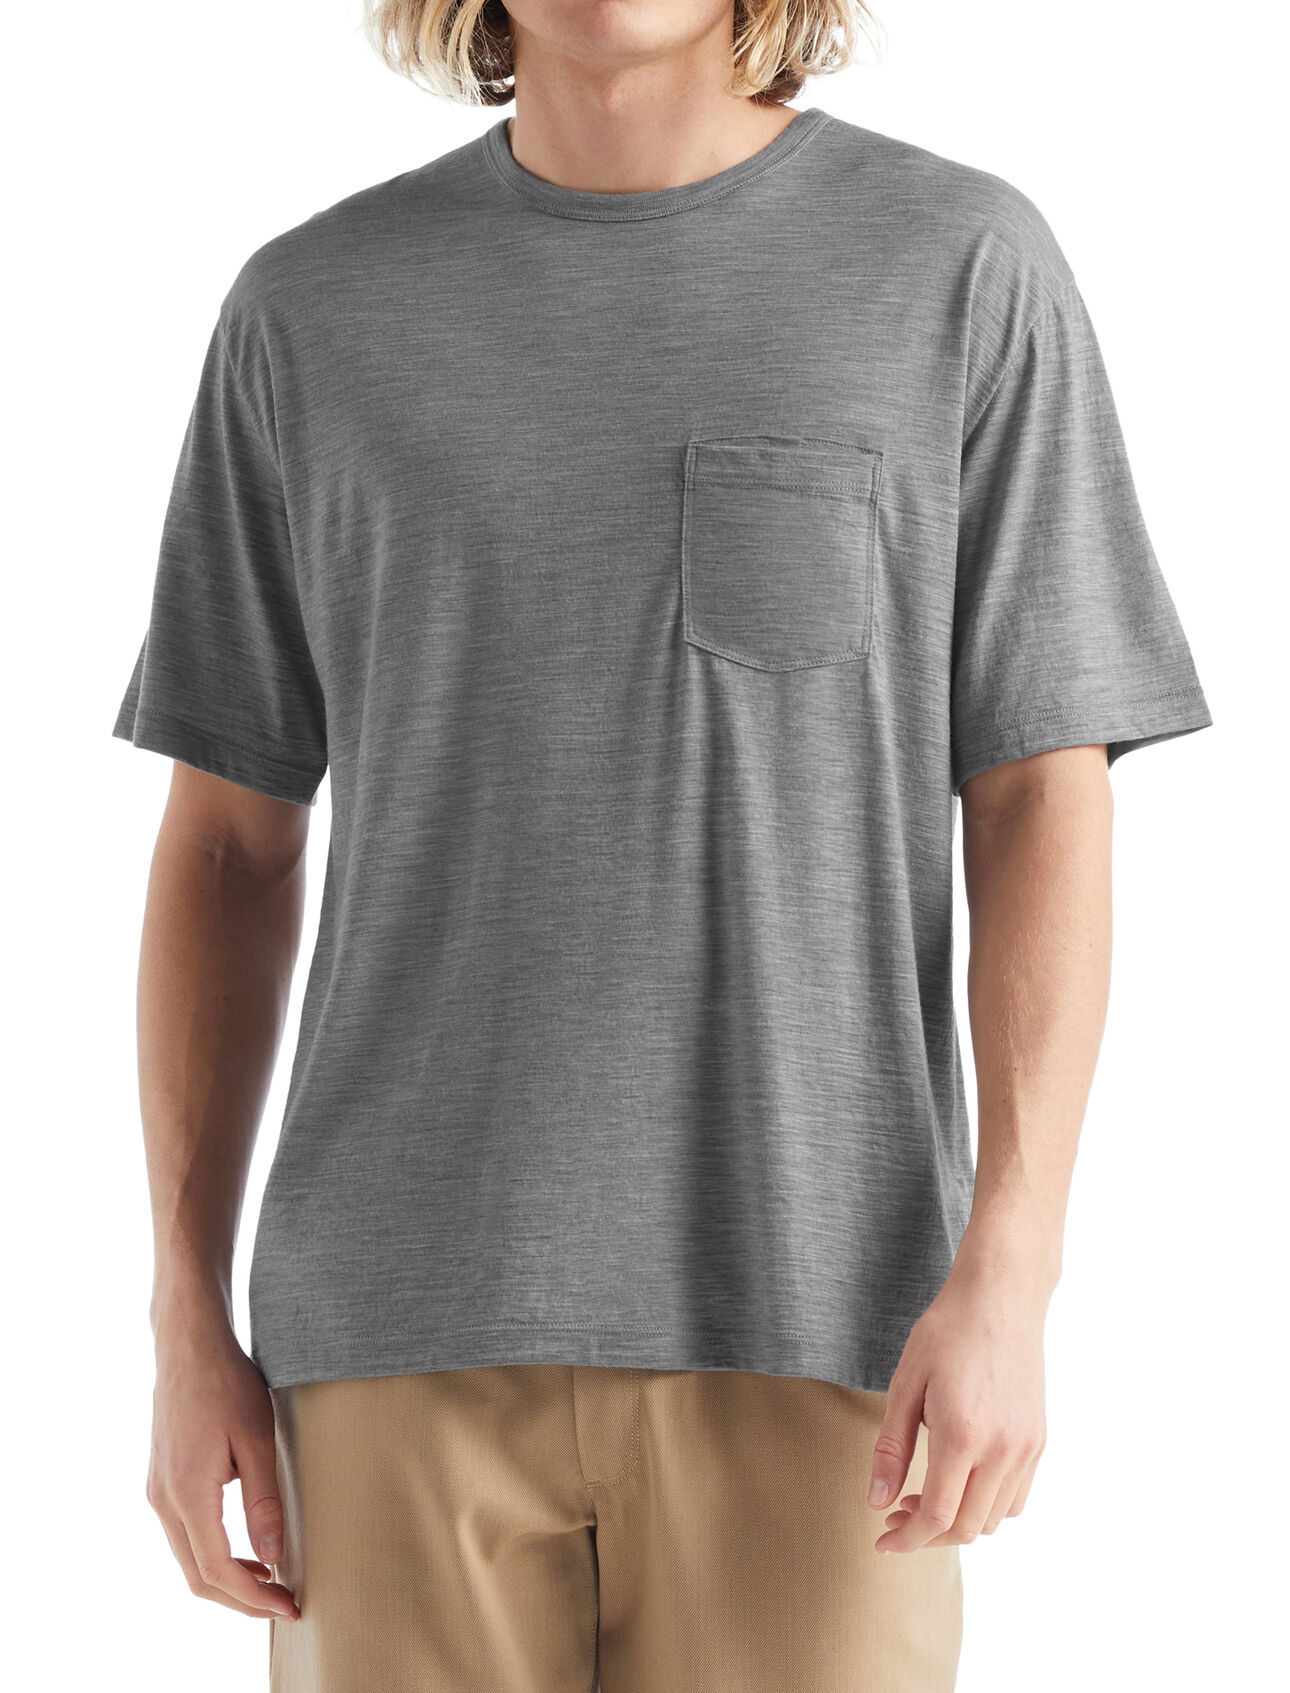 Herr Granary kortärmad t-shirt i merino med ficka Granary kortärmad t-shirt med ficka är en klassisk tröja med en avslappnad passform och mjuk, ventilerande 100% merinoull. Det är ett självklart plagg för vardaglig komfort och stil. 